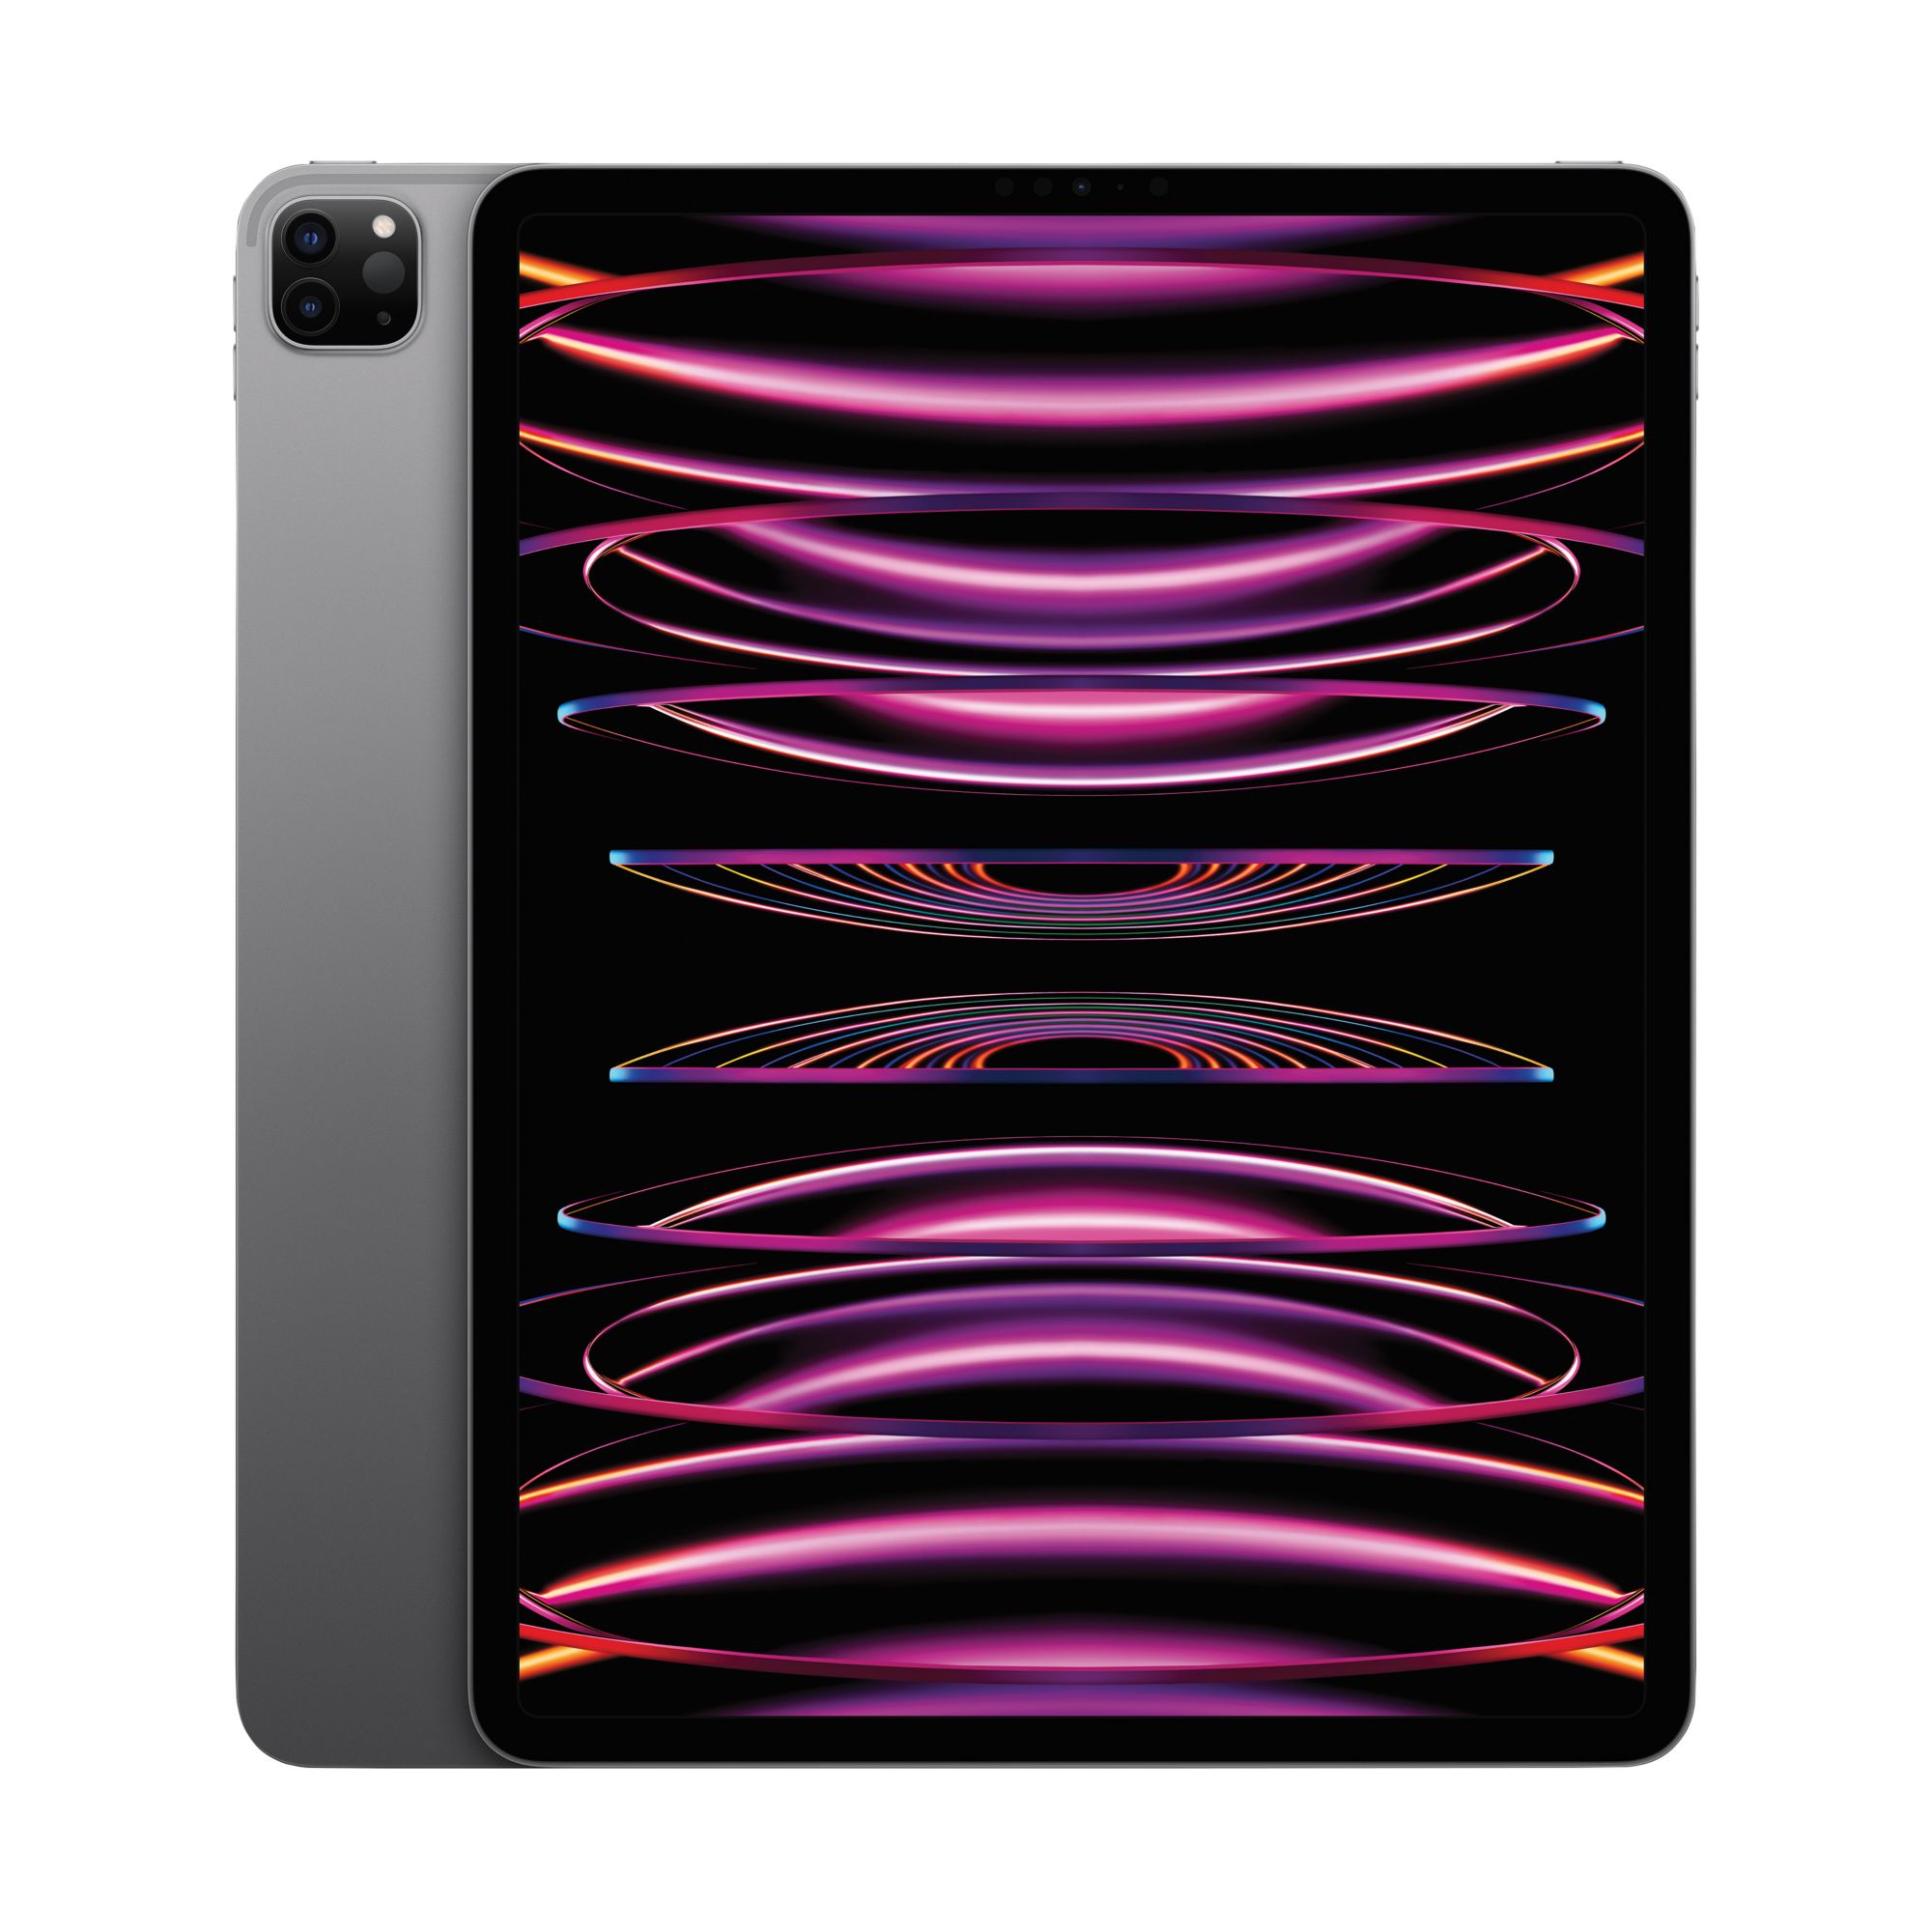 Apple iPad Pro 12.9, 256GB, Wi-Fi - Space Gray